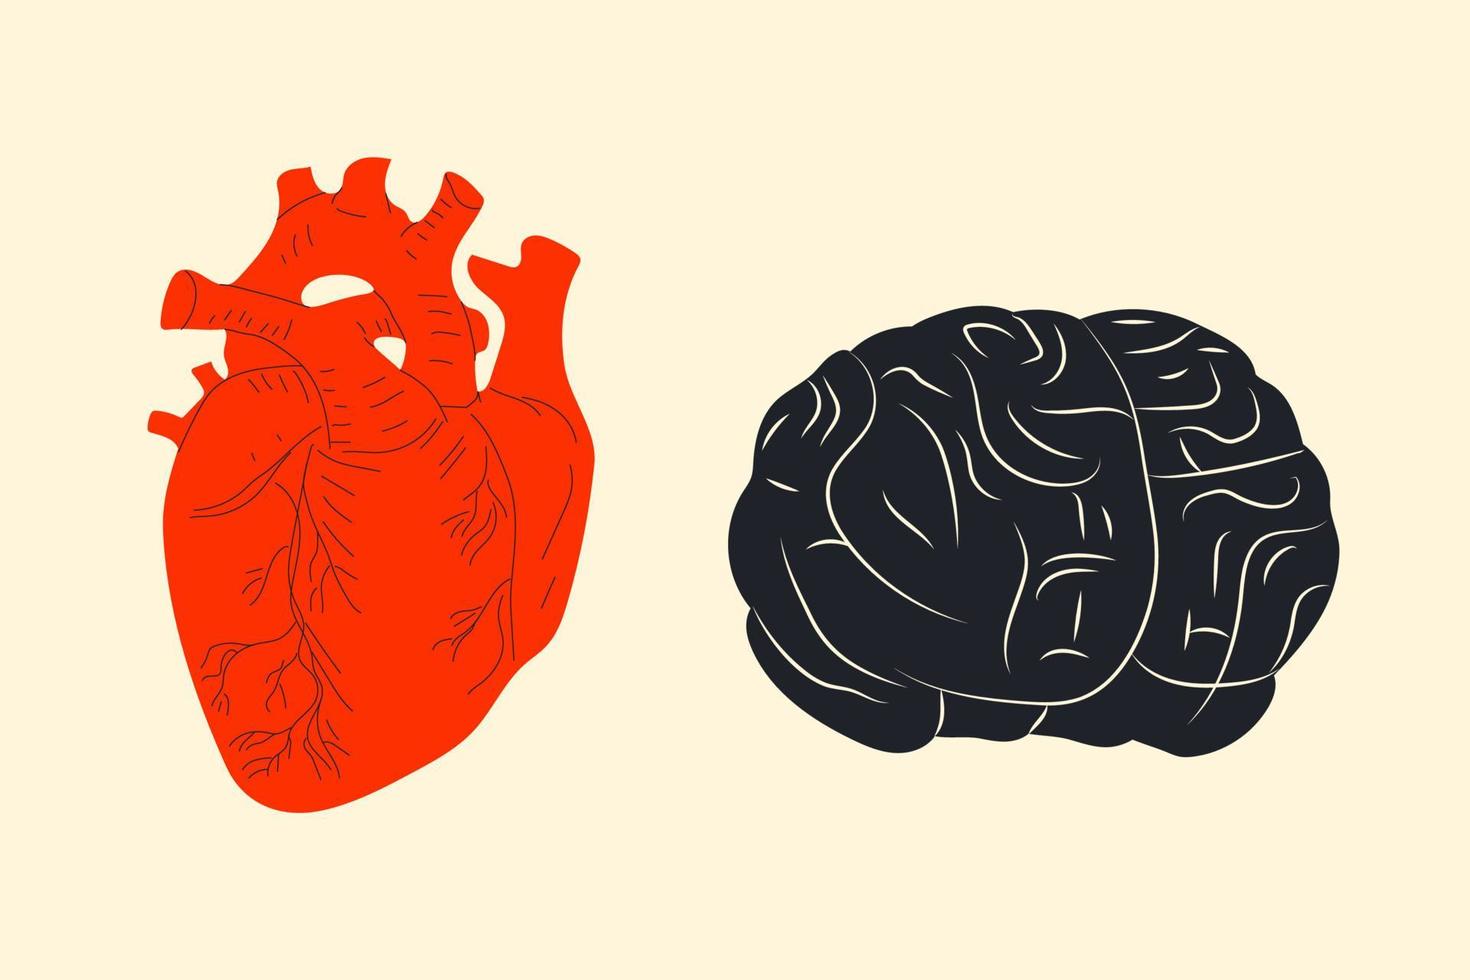 personaje de dibujos animados de corazón y cerebro humano. vector